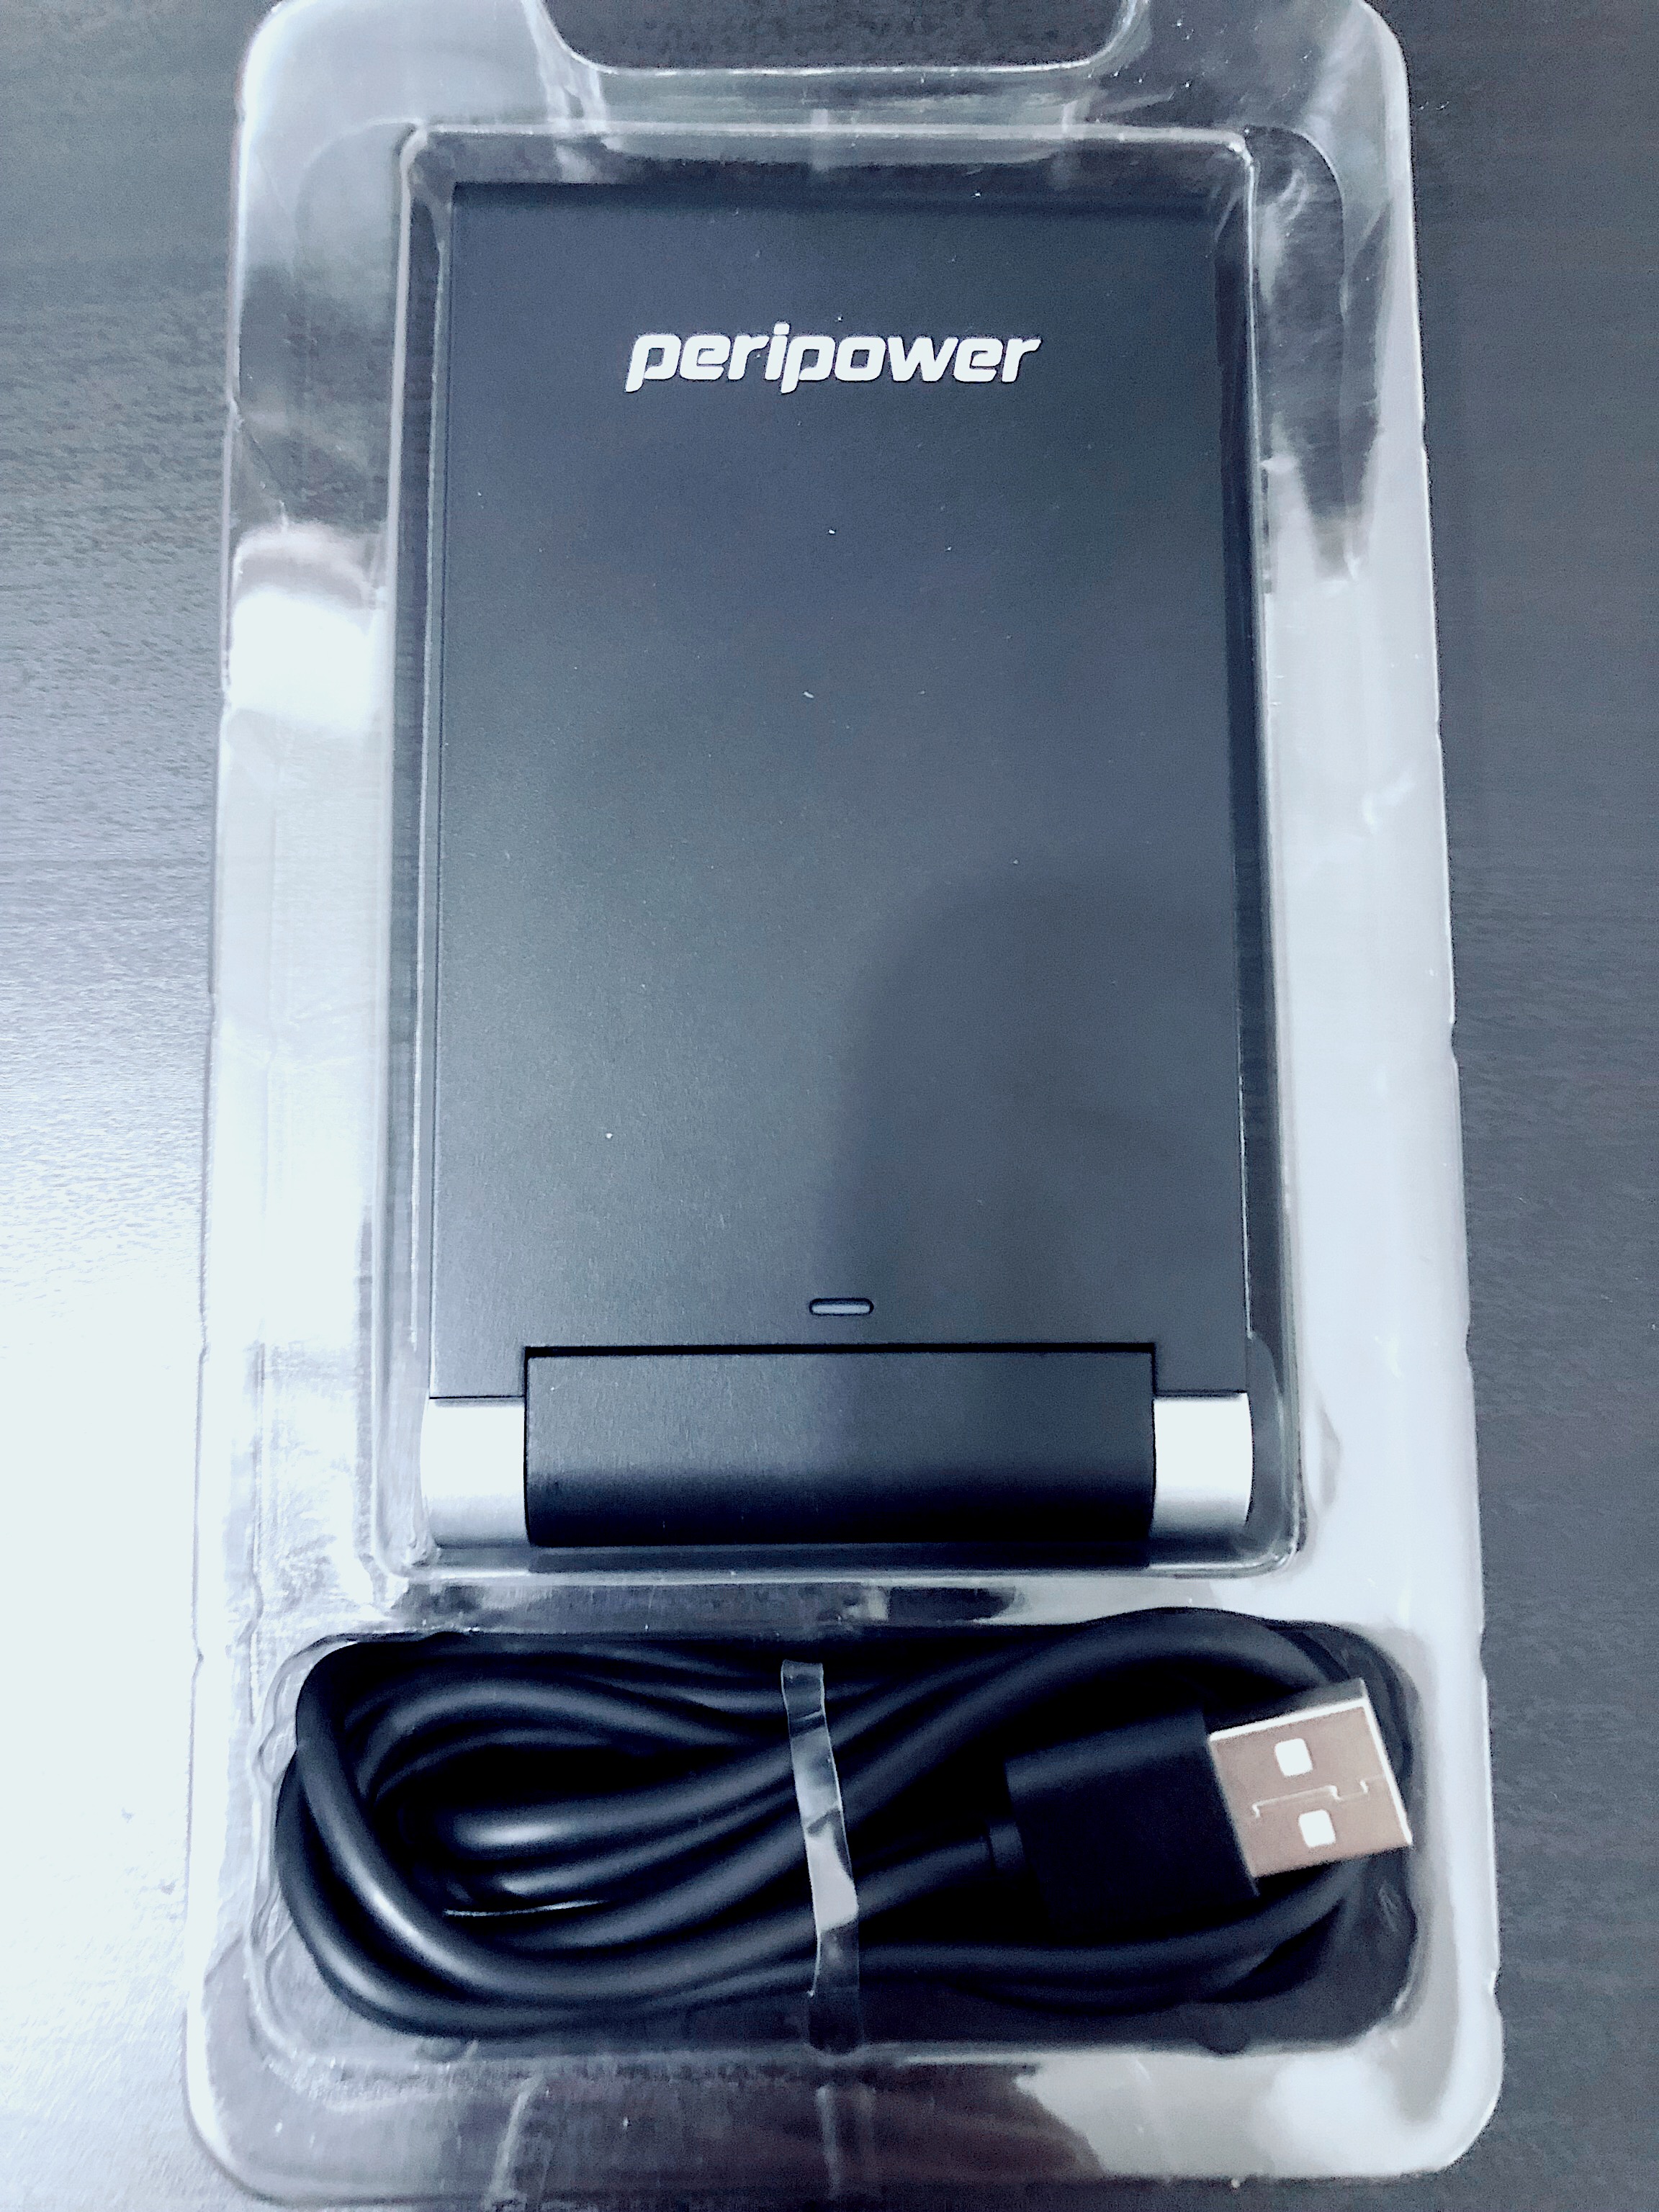 【開箱】peripower無線充電架｜無線充電的好處，在於那可無限發展的便捷性！ - 3C, peripower, 價格, 手機充電, 桌用, 業配文, 無線充電, 無線充電架, 開箱, 雙線圈迴路 - 多多看電影-最新、最豐富的影視評論和新聞！